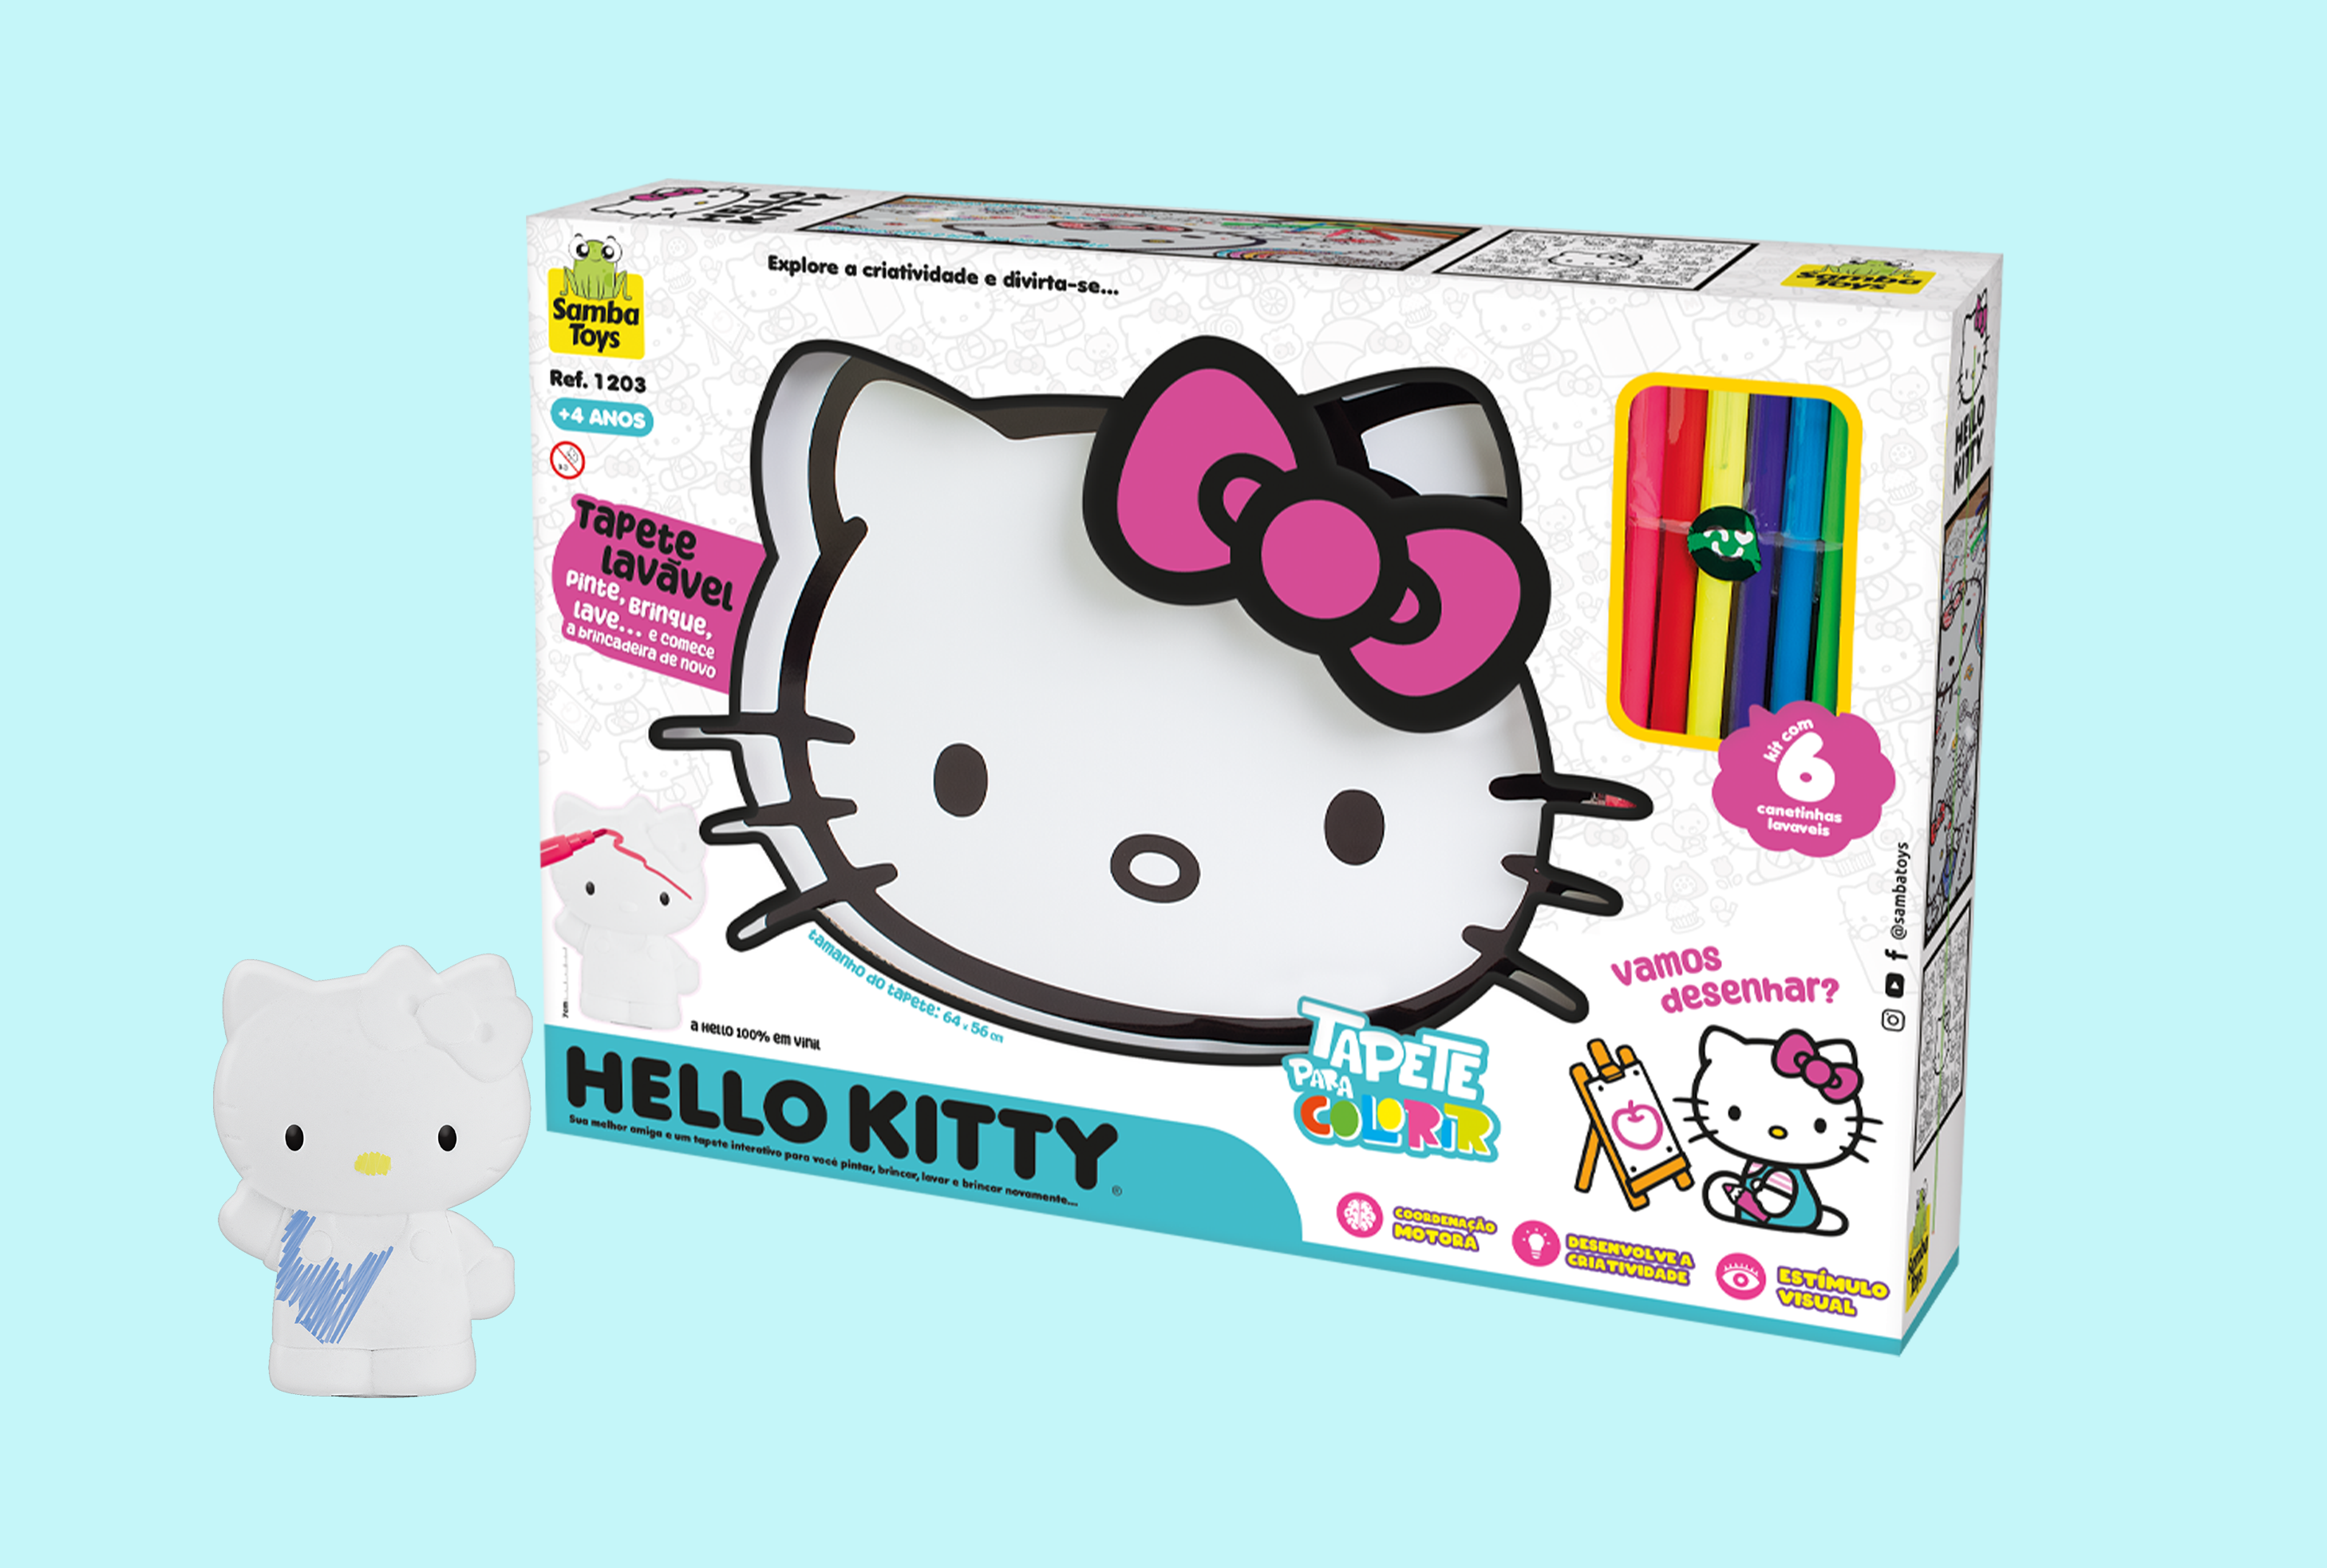 Hello Kitty - Tapete para Colorir